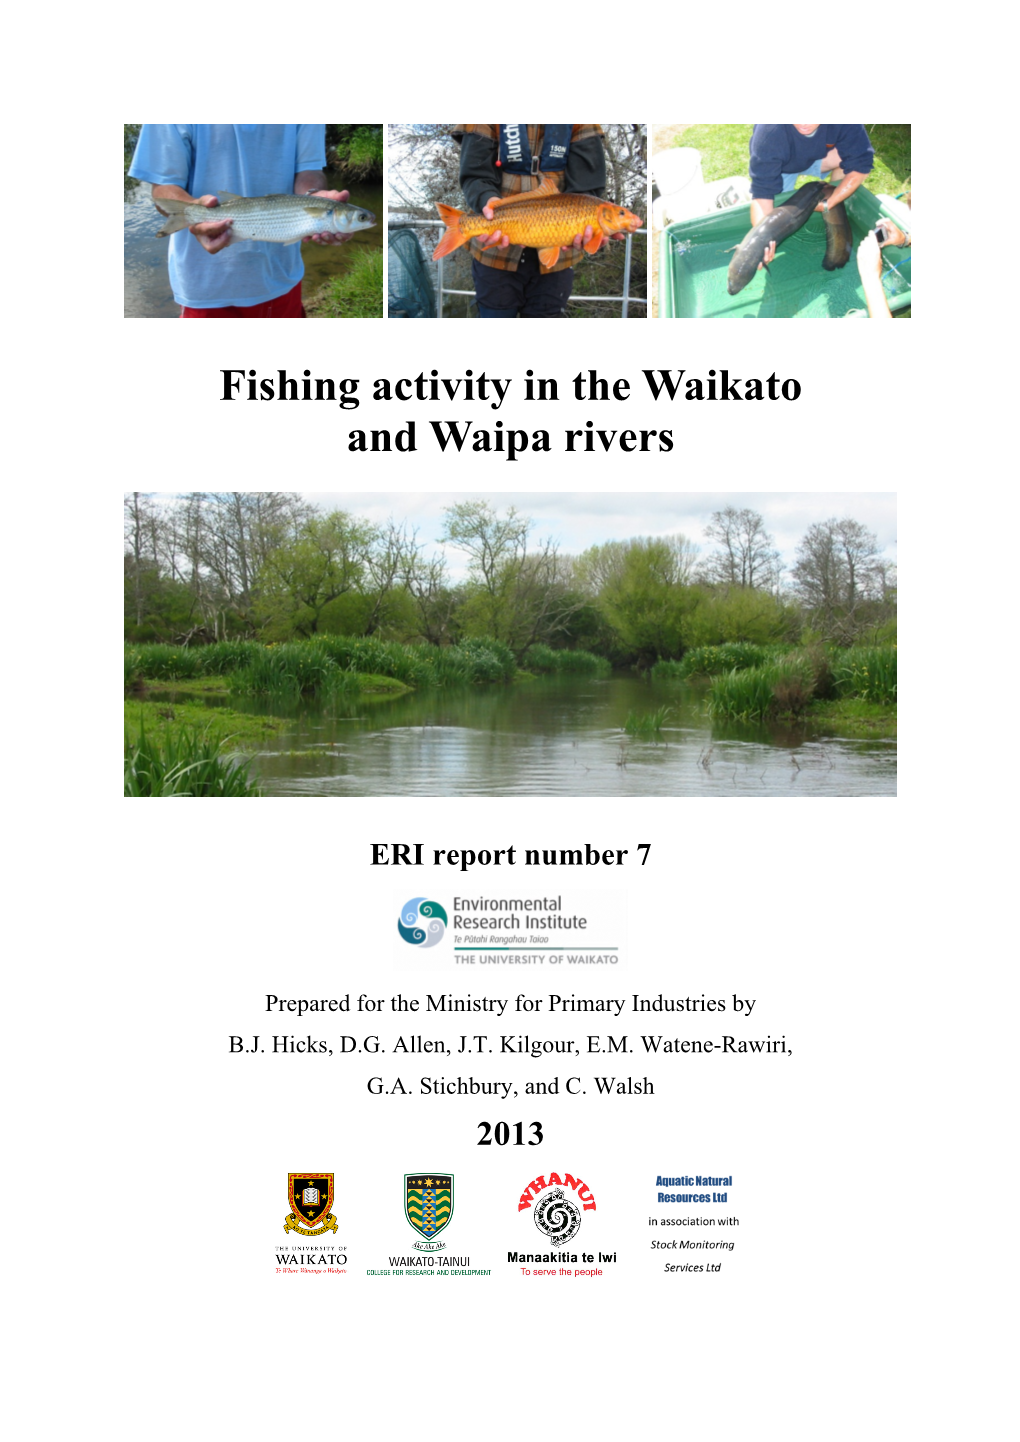 Fishing Activity in the Waikato and Waipa Rivers